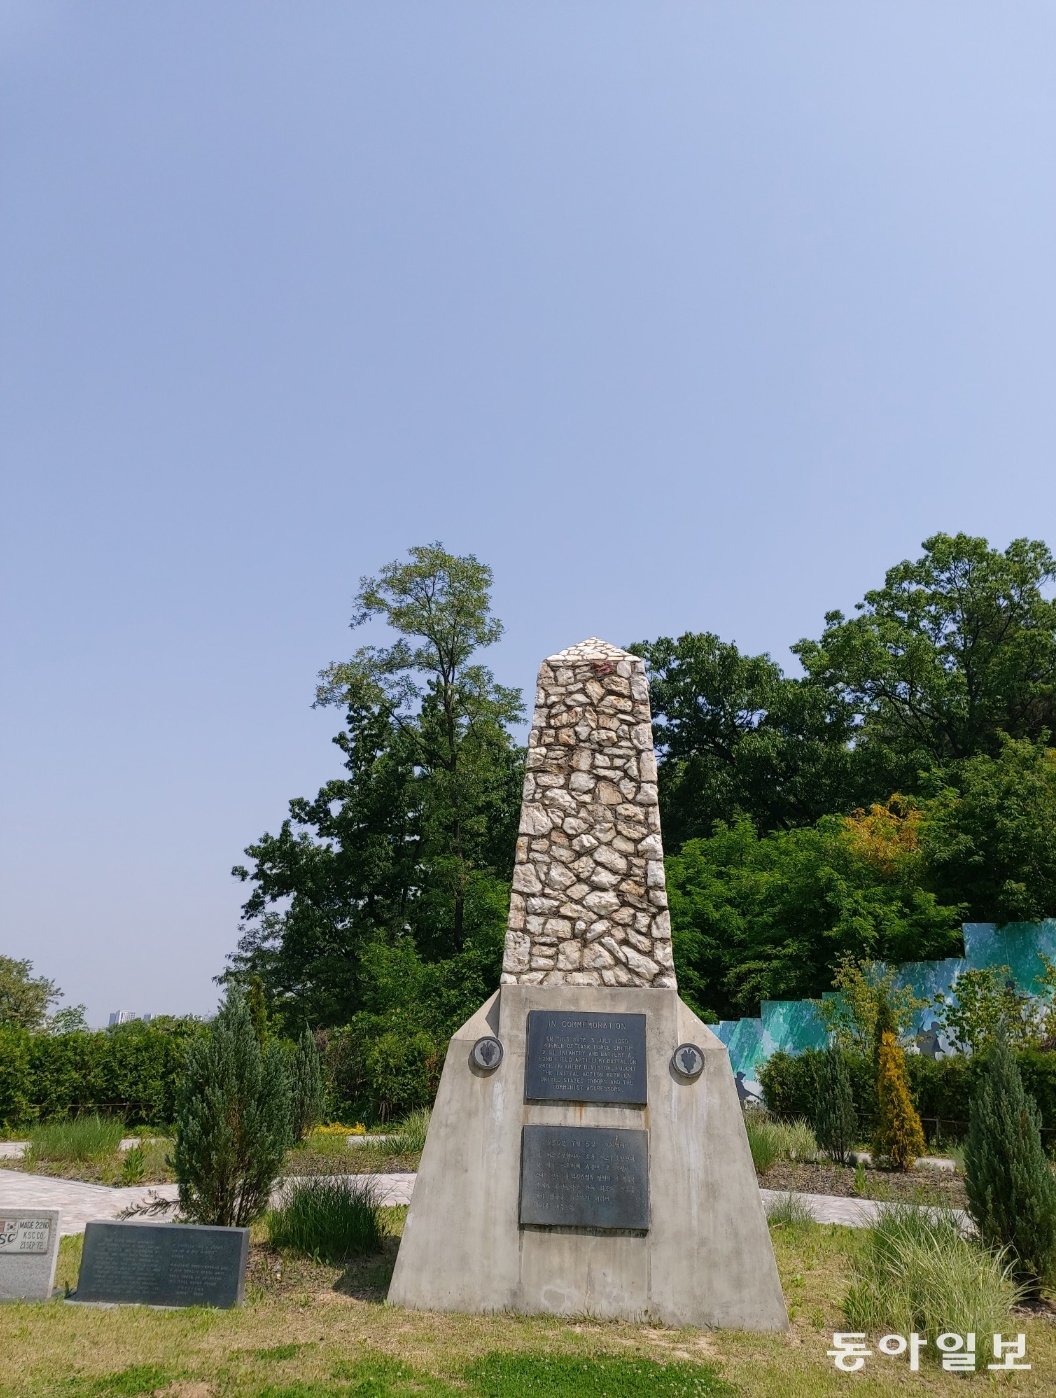 오산 죽미령 평화공원의 구 ‘유엔 초전 기념비’.  스미스 부대원 숫자인 약 450개의 돌을 쌓은 모습이다.   오산 =구자룡 기자